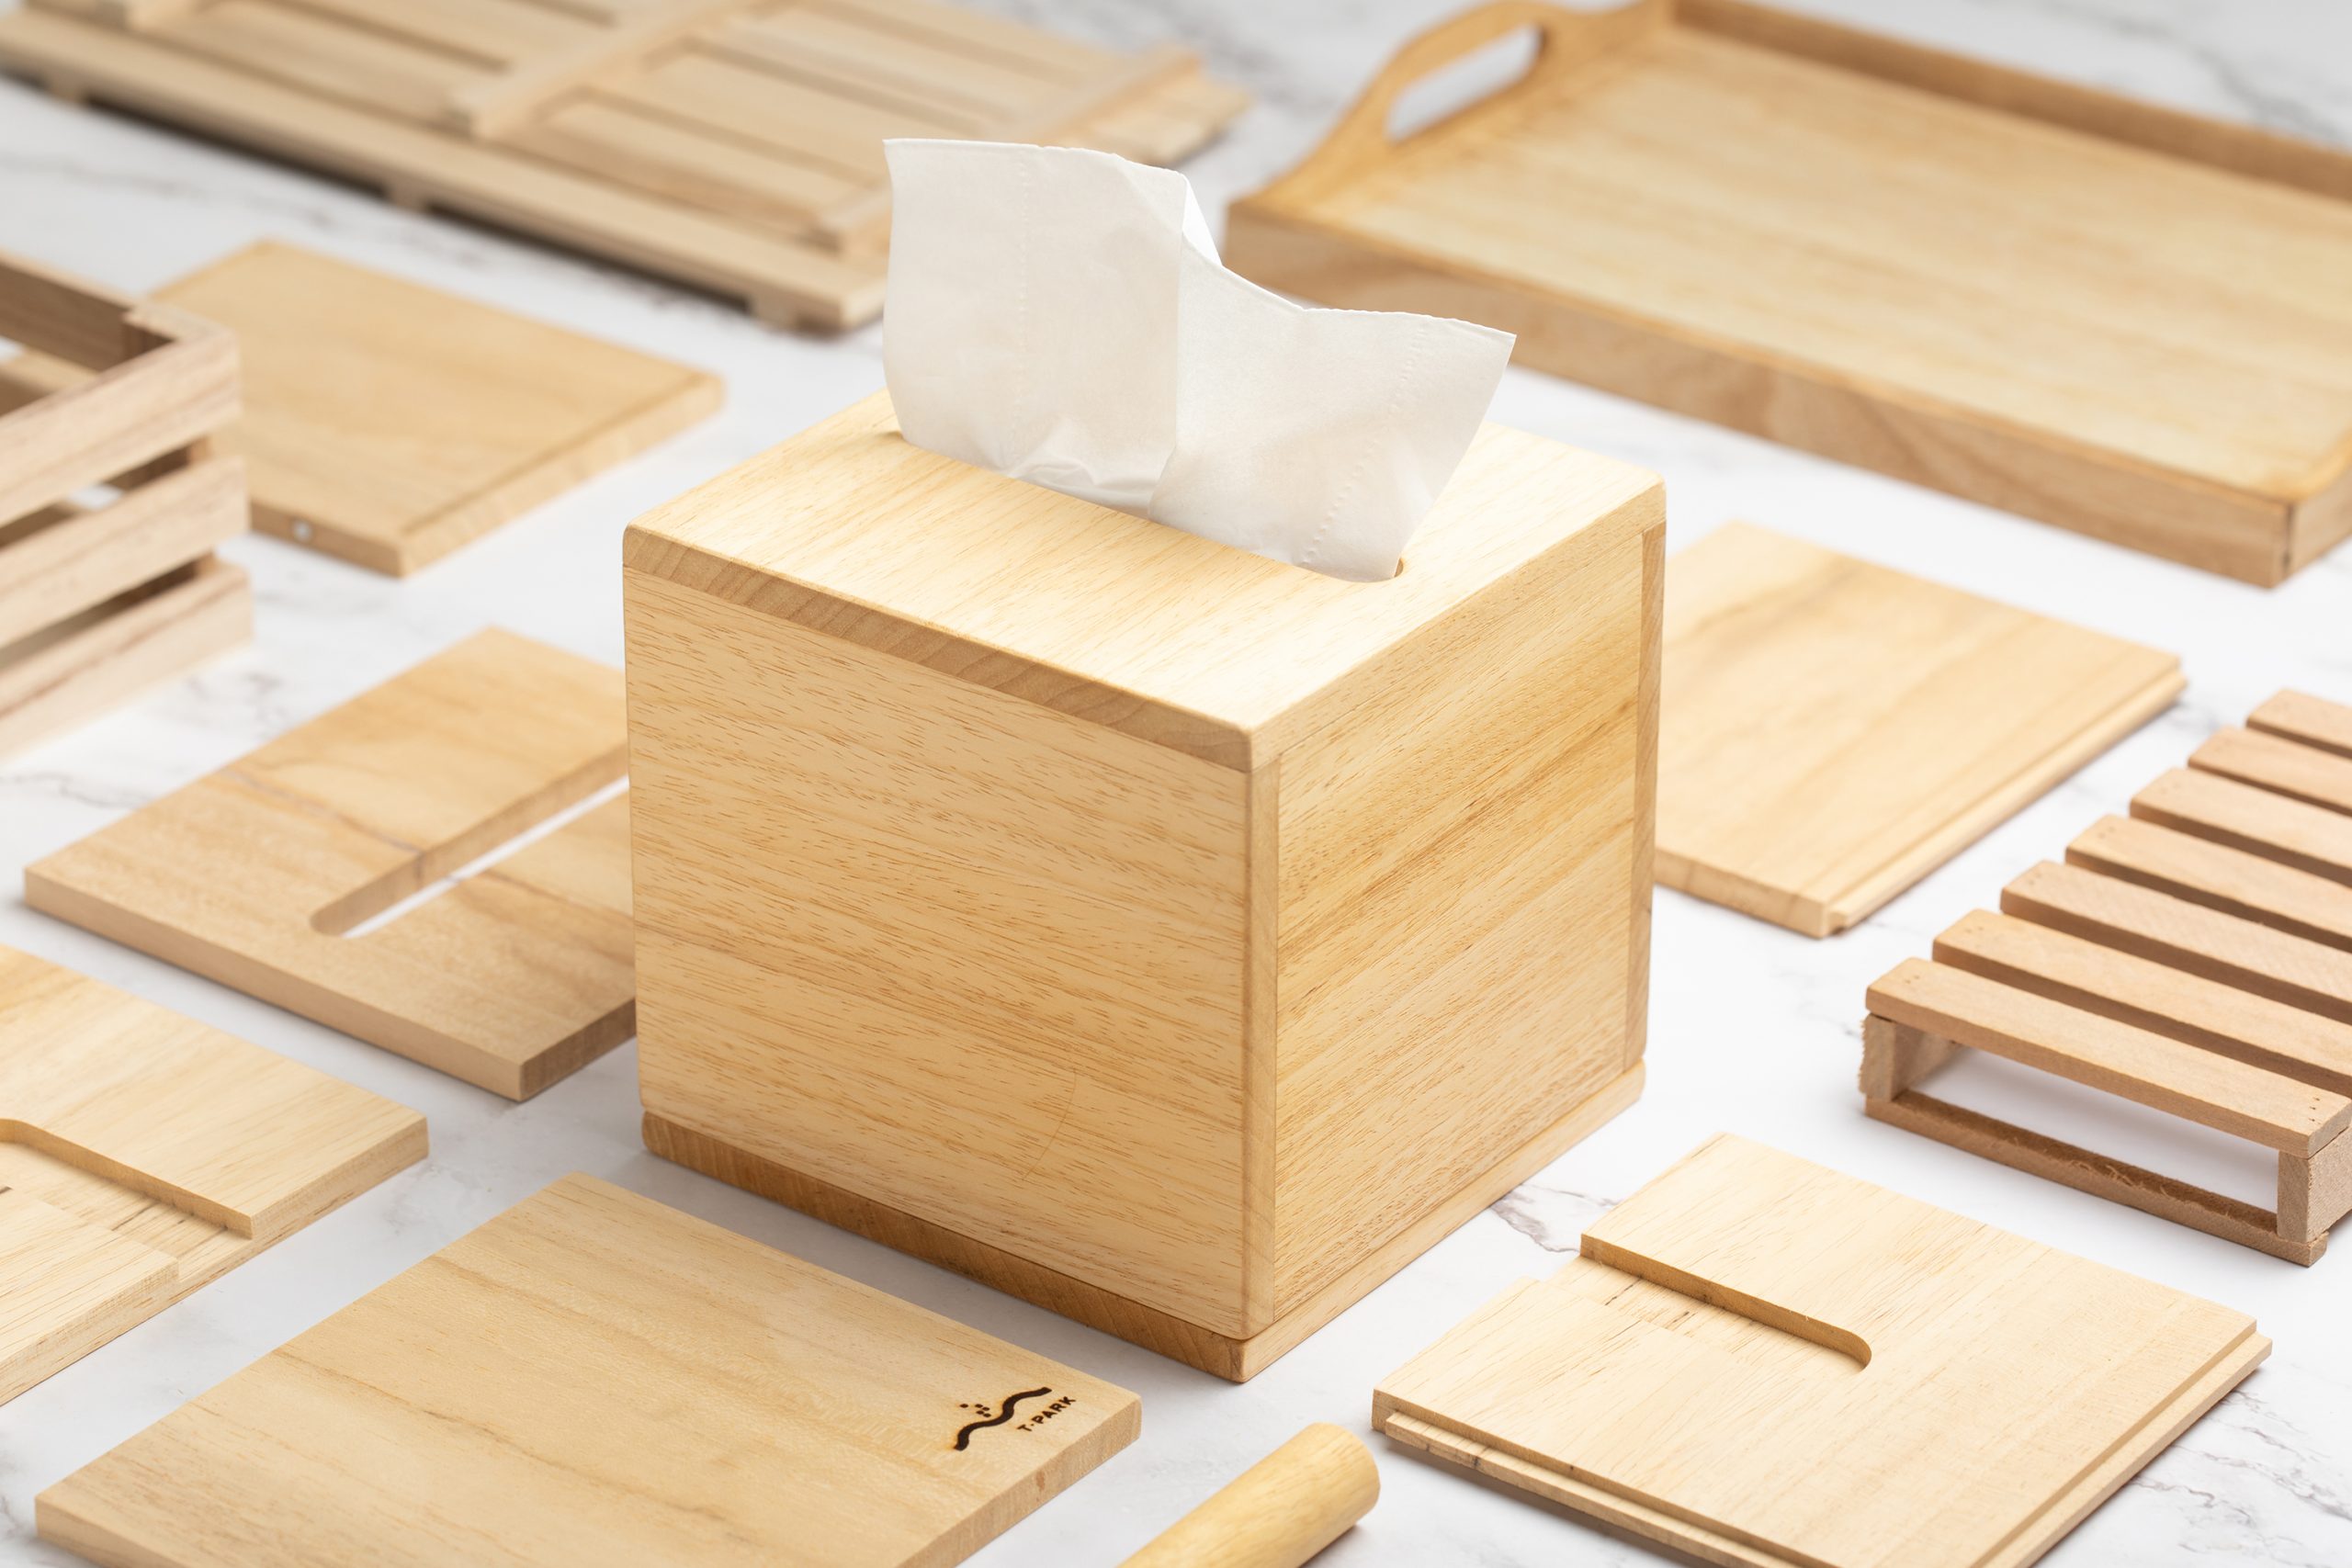 再造木纸巾盒工作坊 (网上活动)